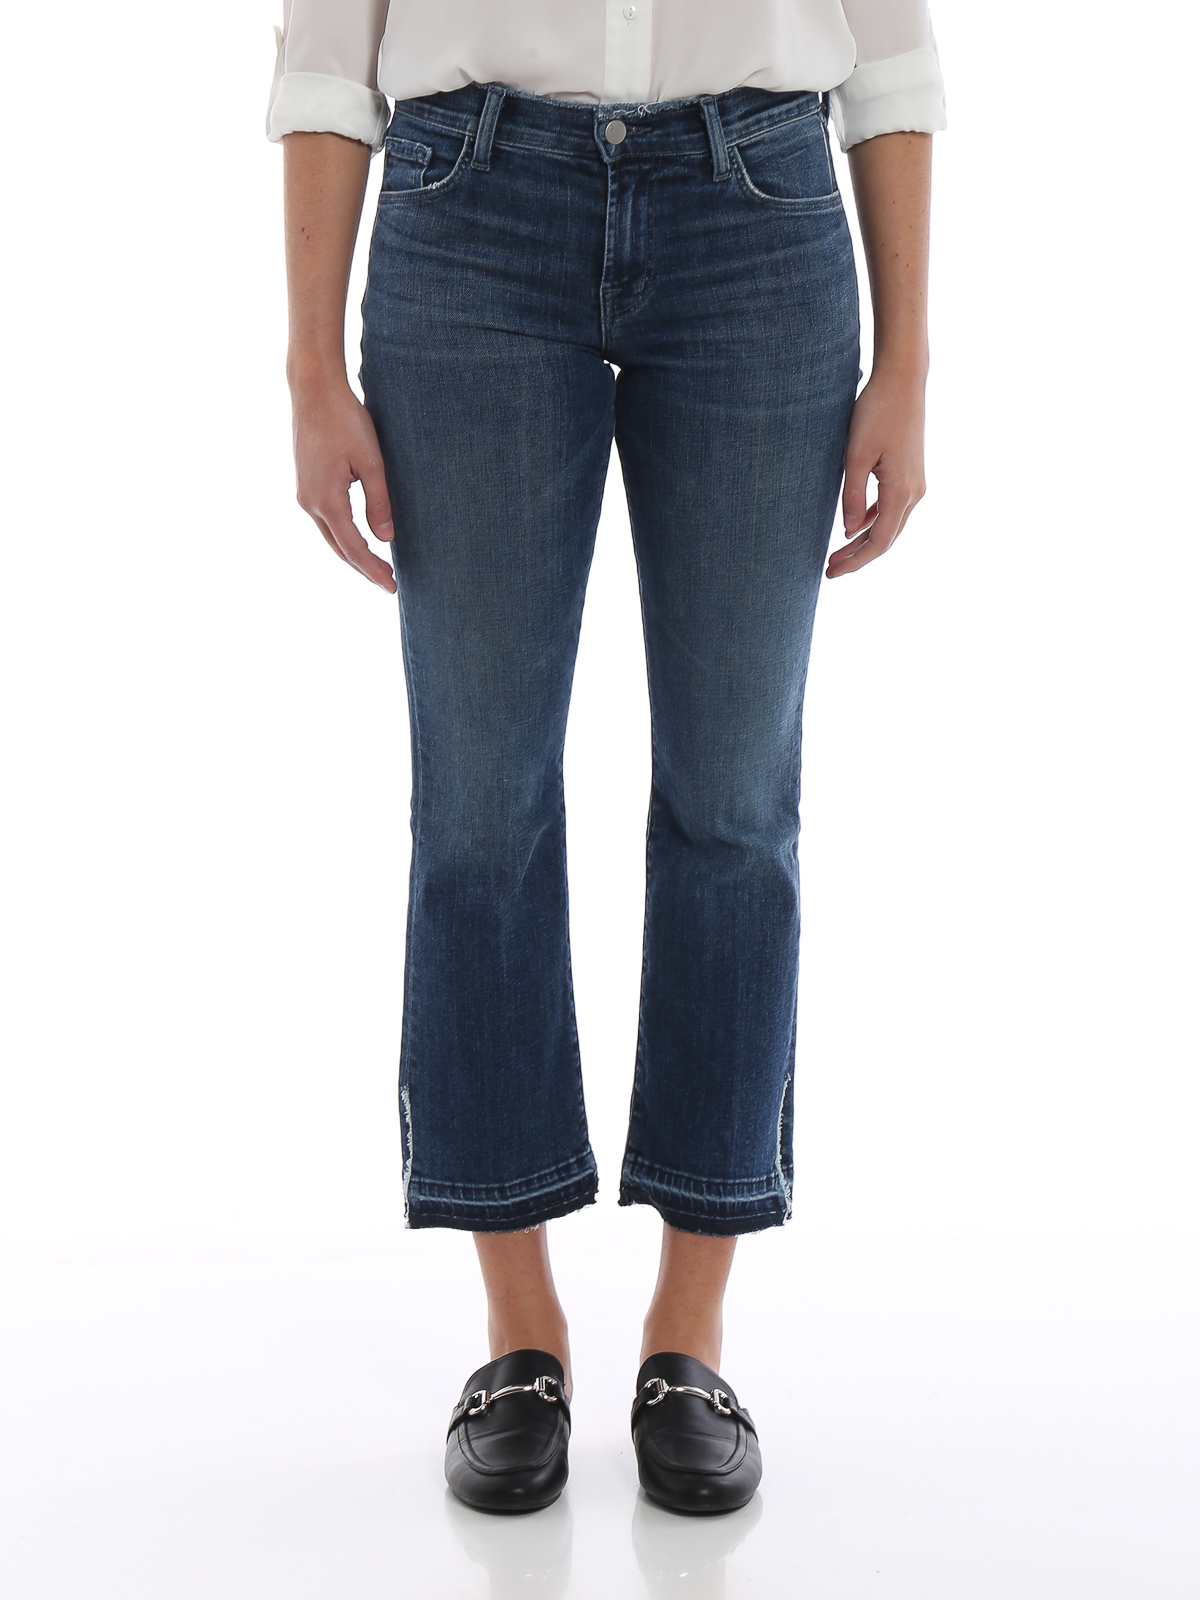 jeans J Brand - Selena crop boot mid jeans - JB001483